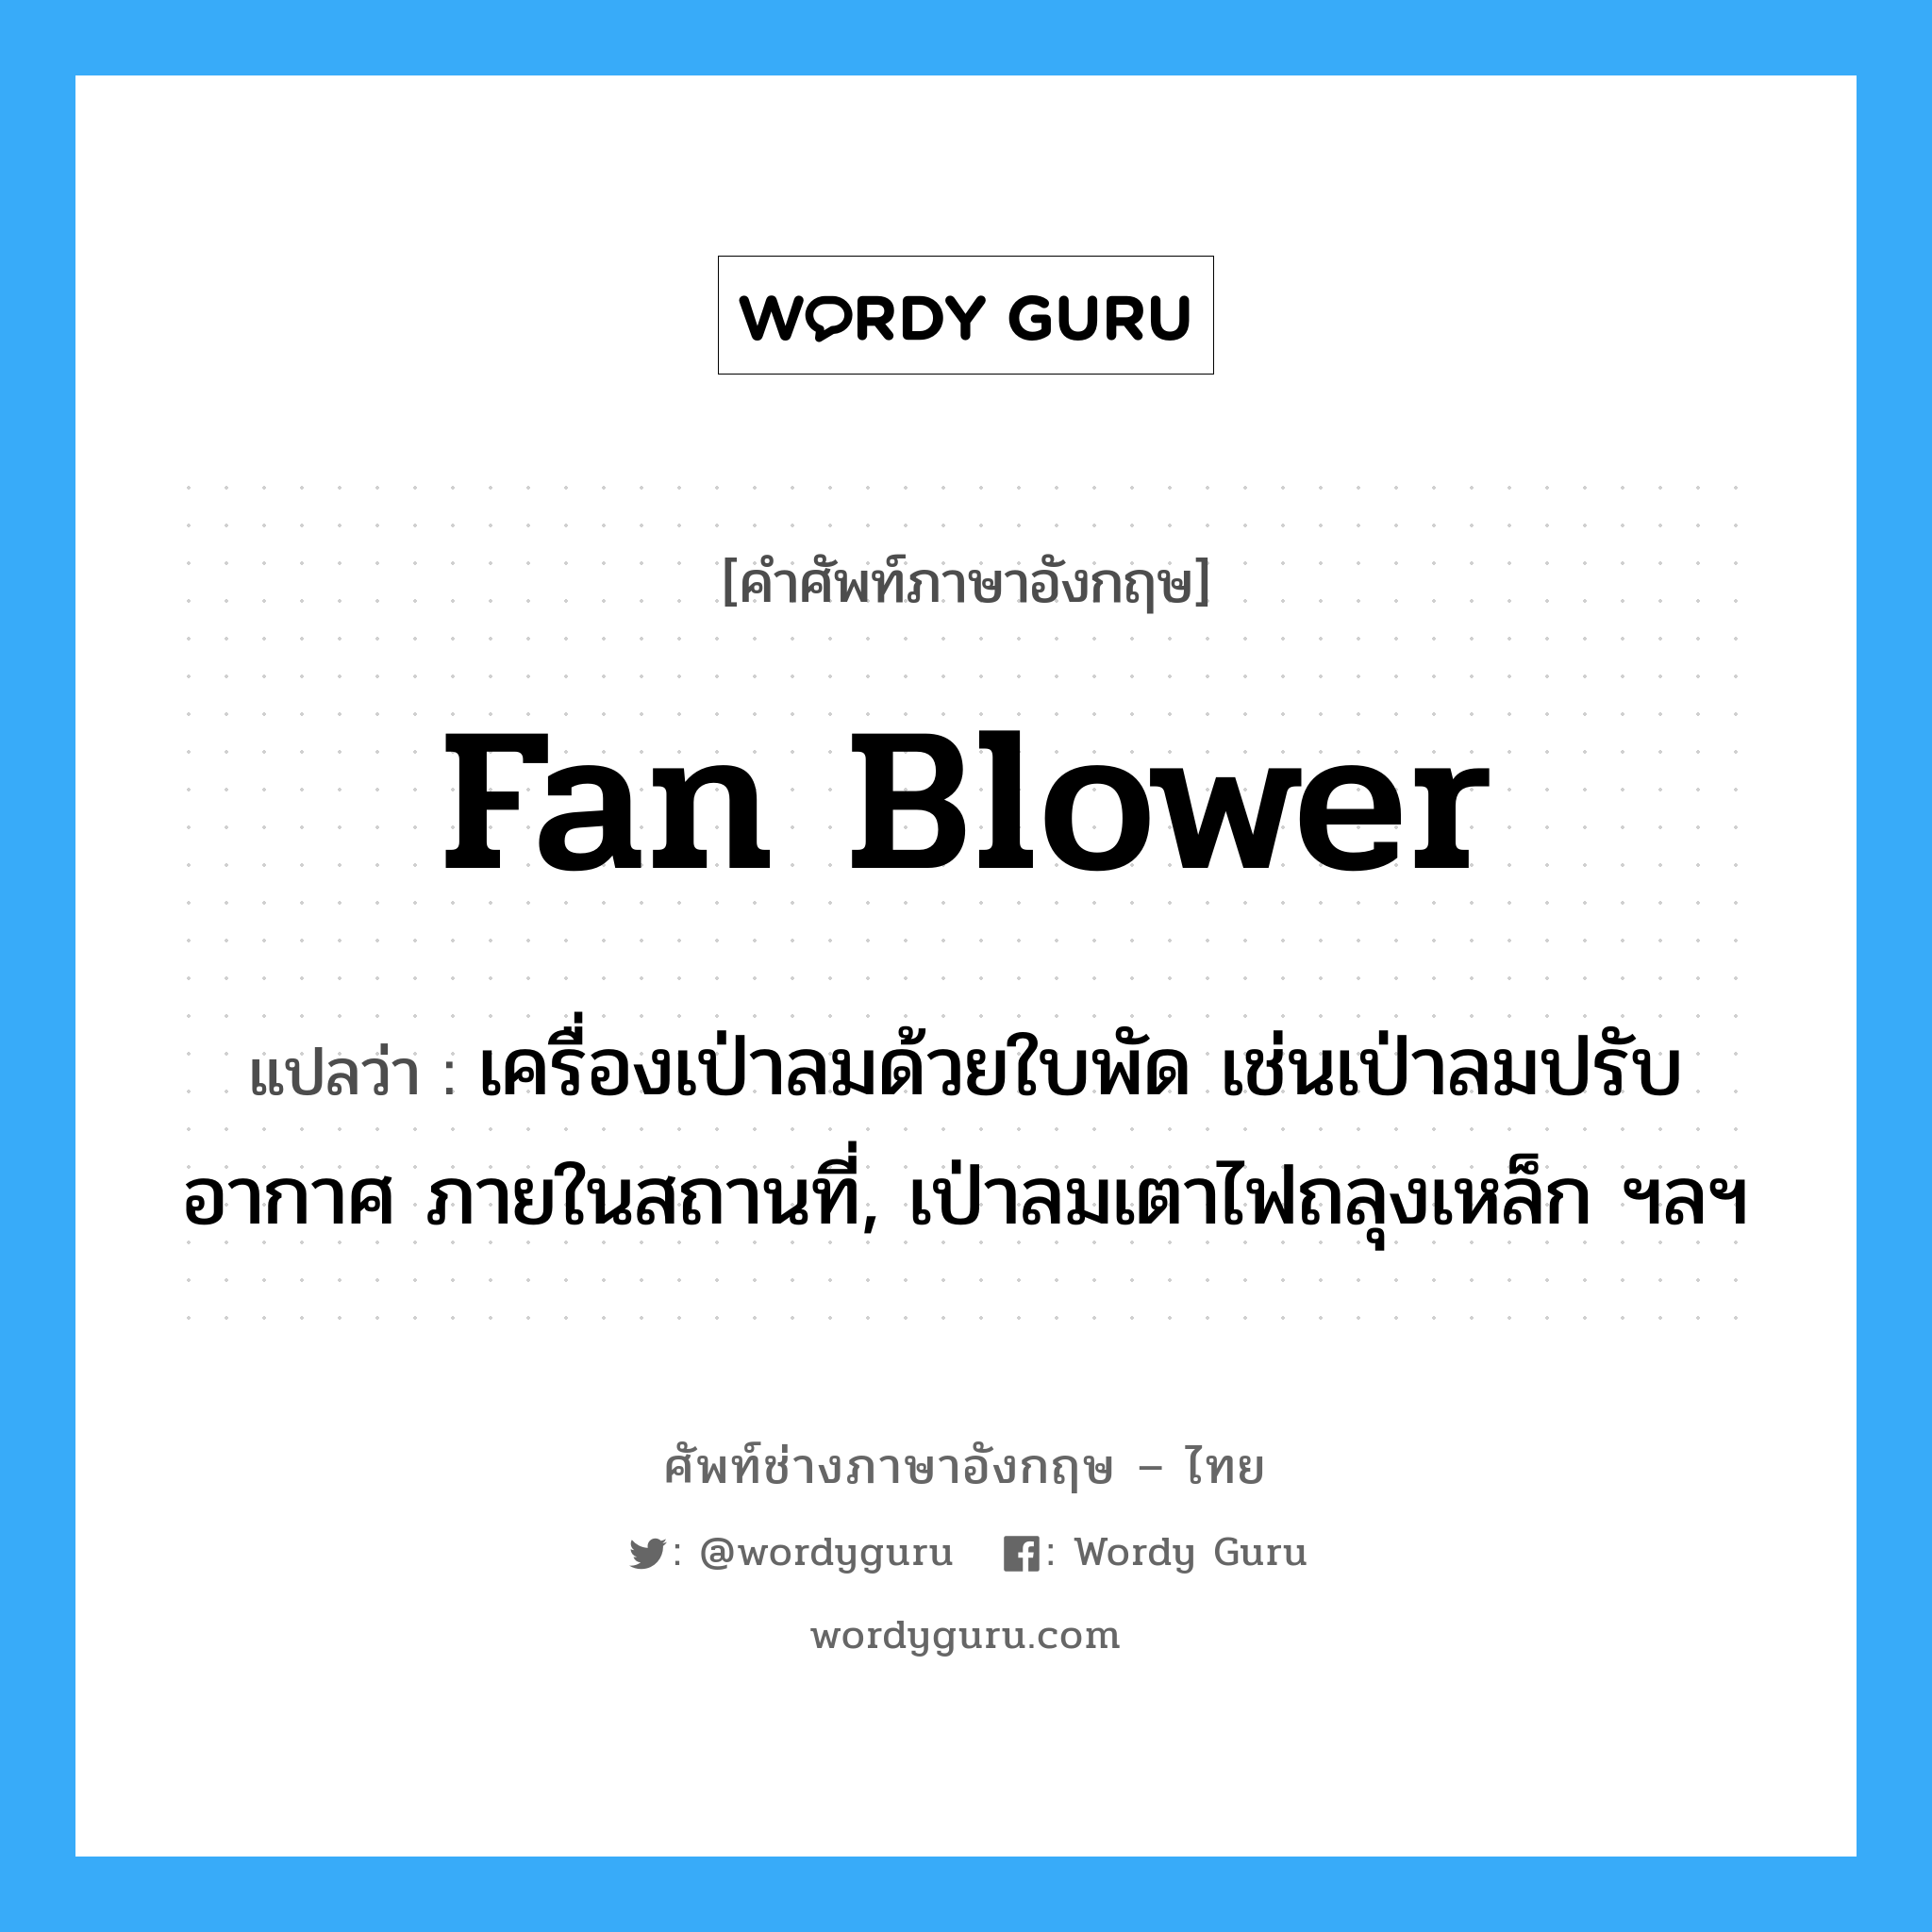 fan blower แปลว่า?, คำศัพท์ช่างภาษาอังกฤษ - ไทย fan blower คำศัพท์ภาษาอังกฤษ fan blower แปลว่า เครื่องเป่าลมด้วยใบพัด เช่นเป่าลมปรับอากาศ ภายในสถานที่, เป่าลมเตาไฟถลุงเหล็ก ฯลฯ